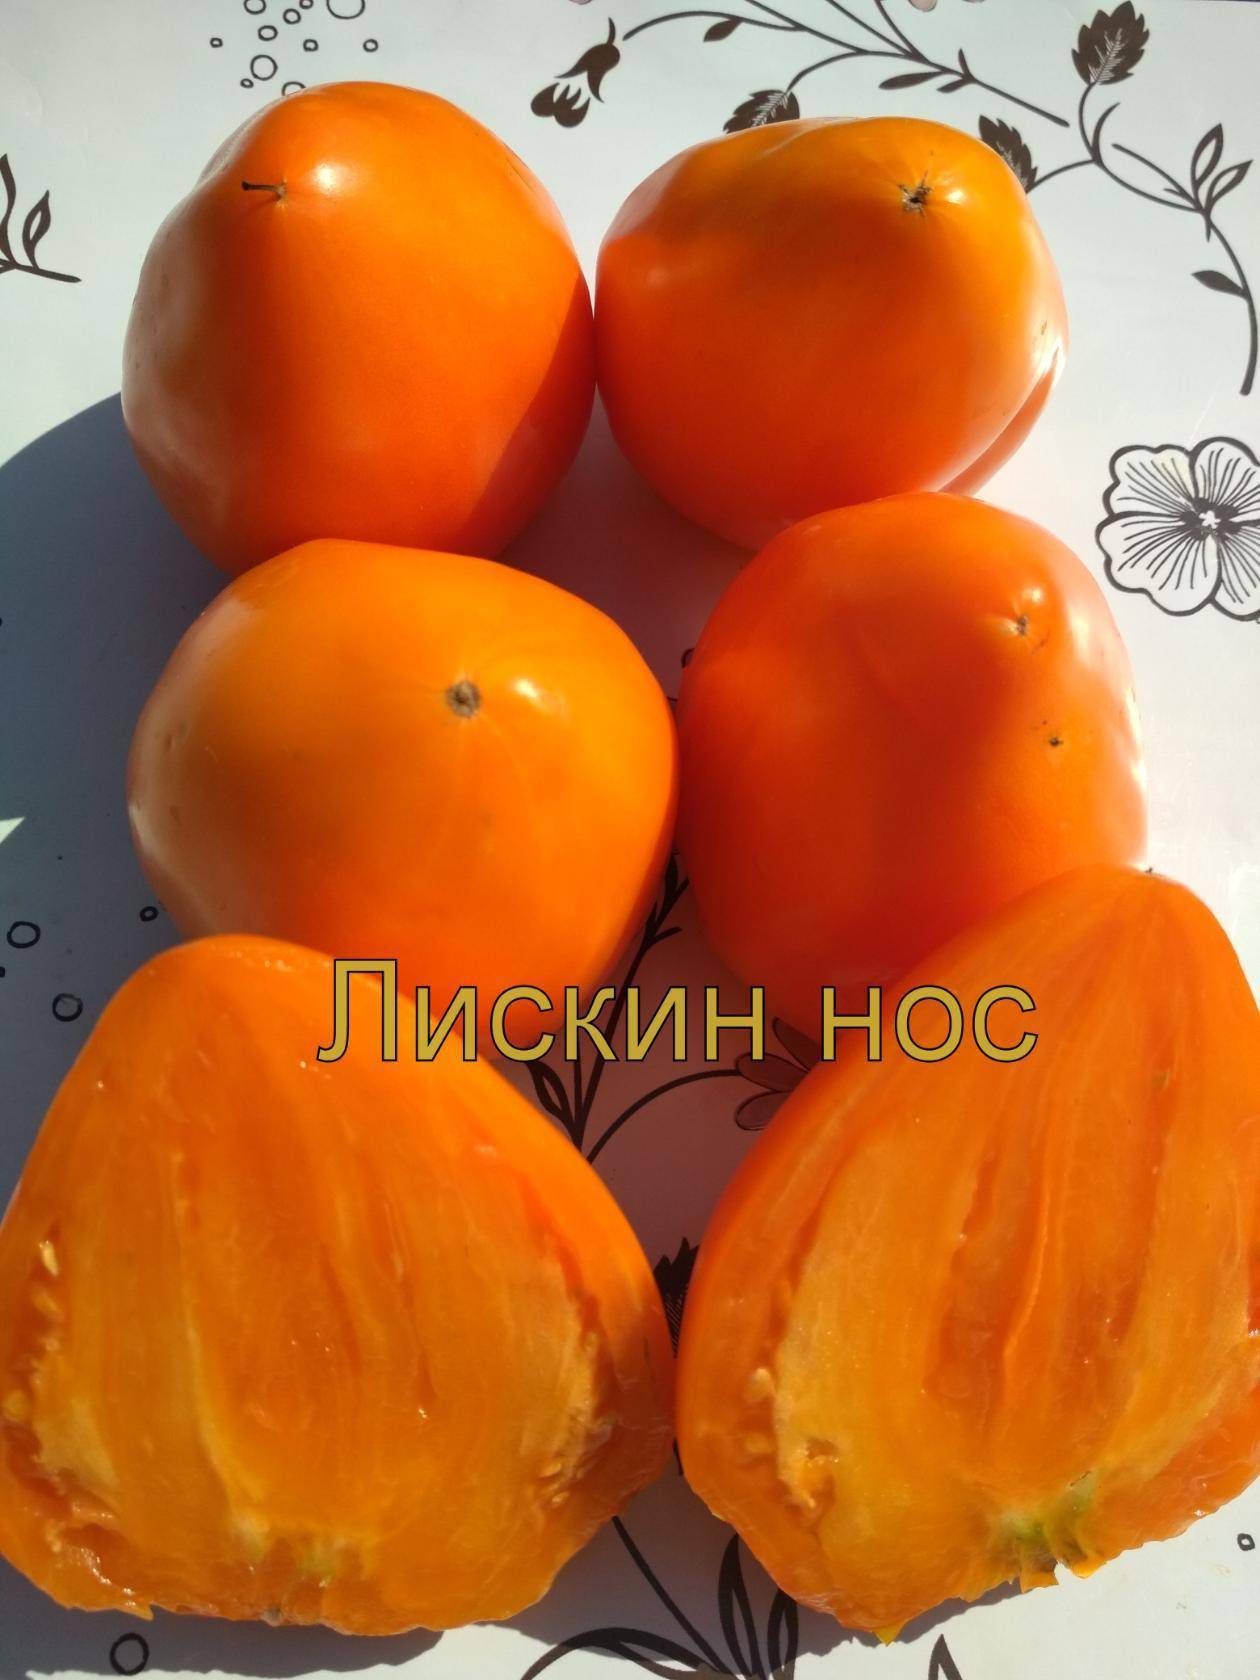 Оранжевое сердце: все о культивации томата повышенной мясистости. описание и рекомендации